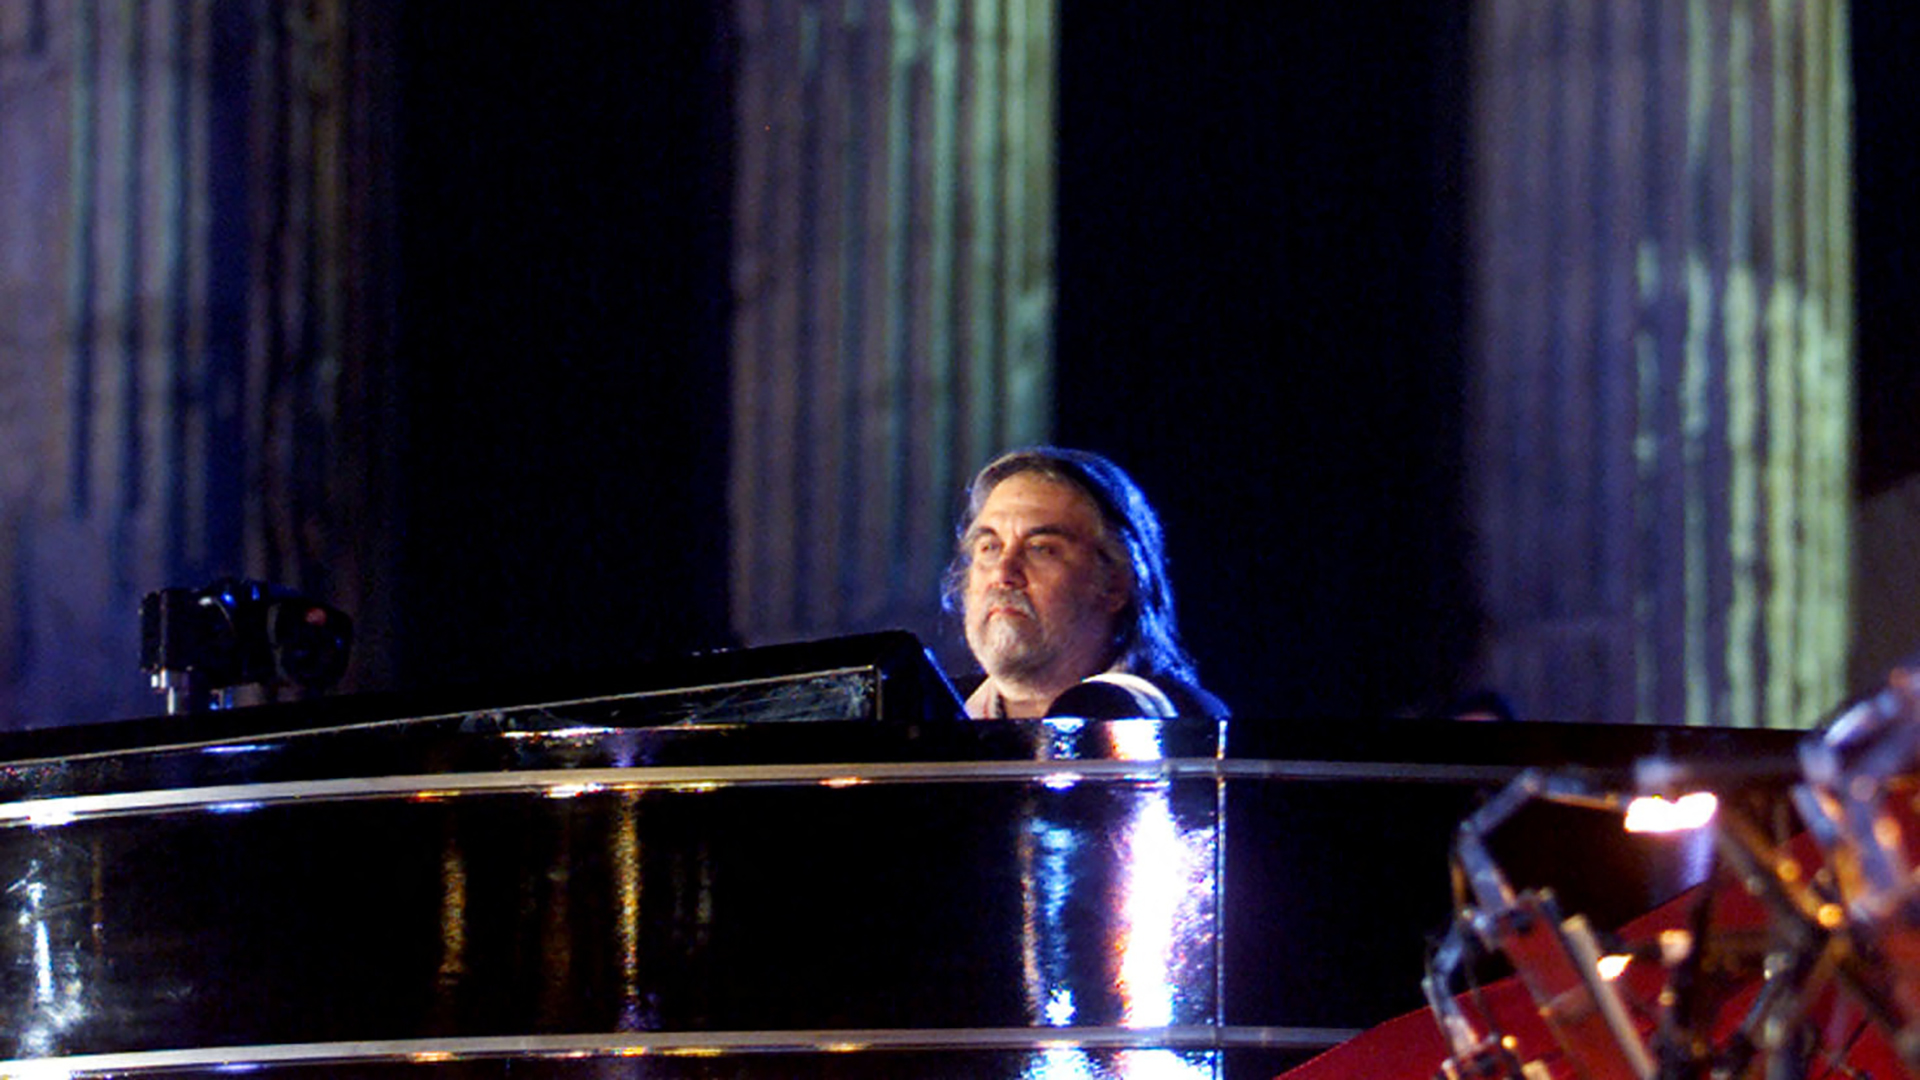 El compositor griego Vangelis se presenta durante un concierto en el Templo de Zeus en Atenas el 28 de junio de 2001 /File Photo